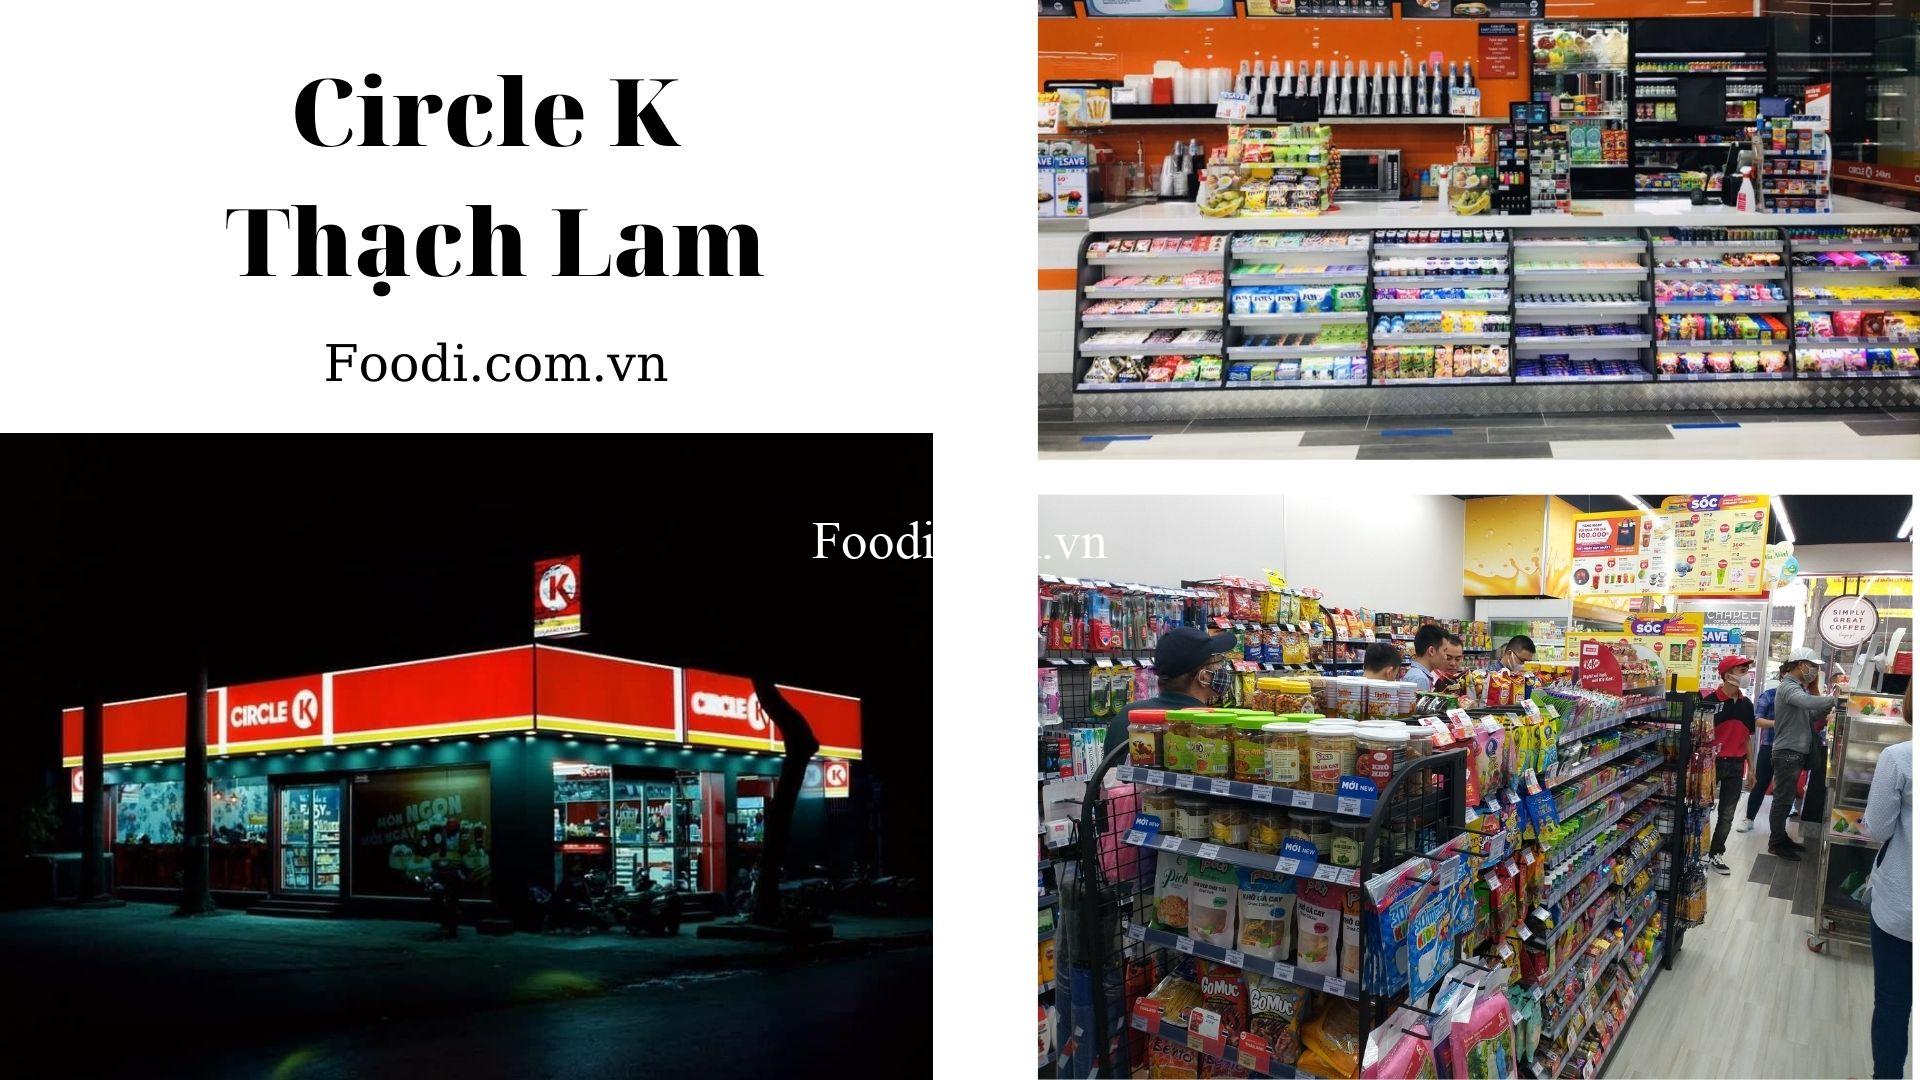 Top 20 Chi nhánh cửa hàng Circle K gần đây tại Sài Gòn nổi tiếng nhất